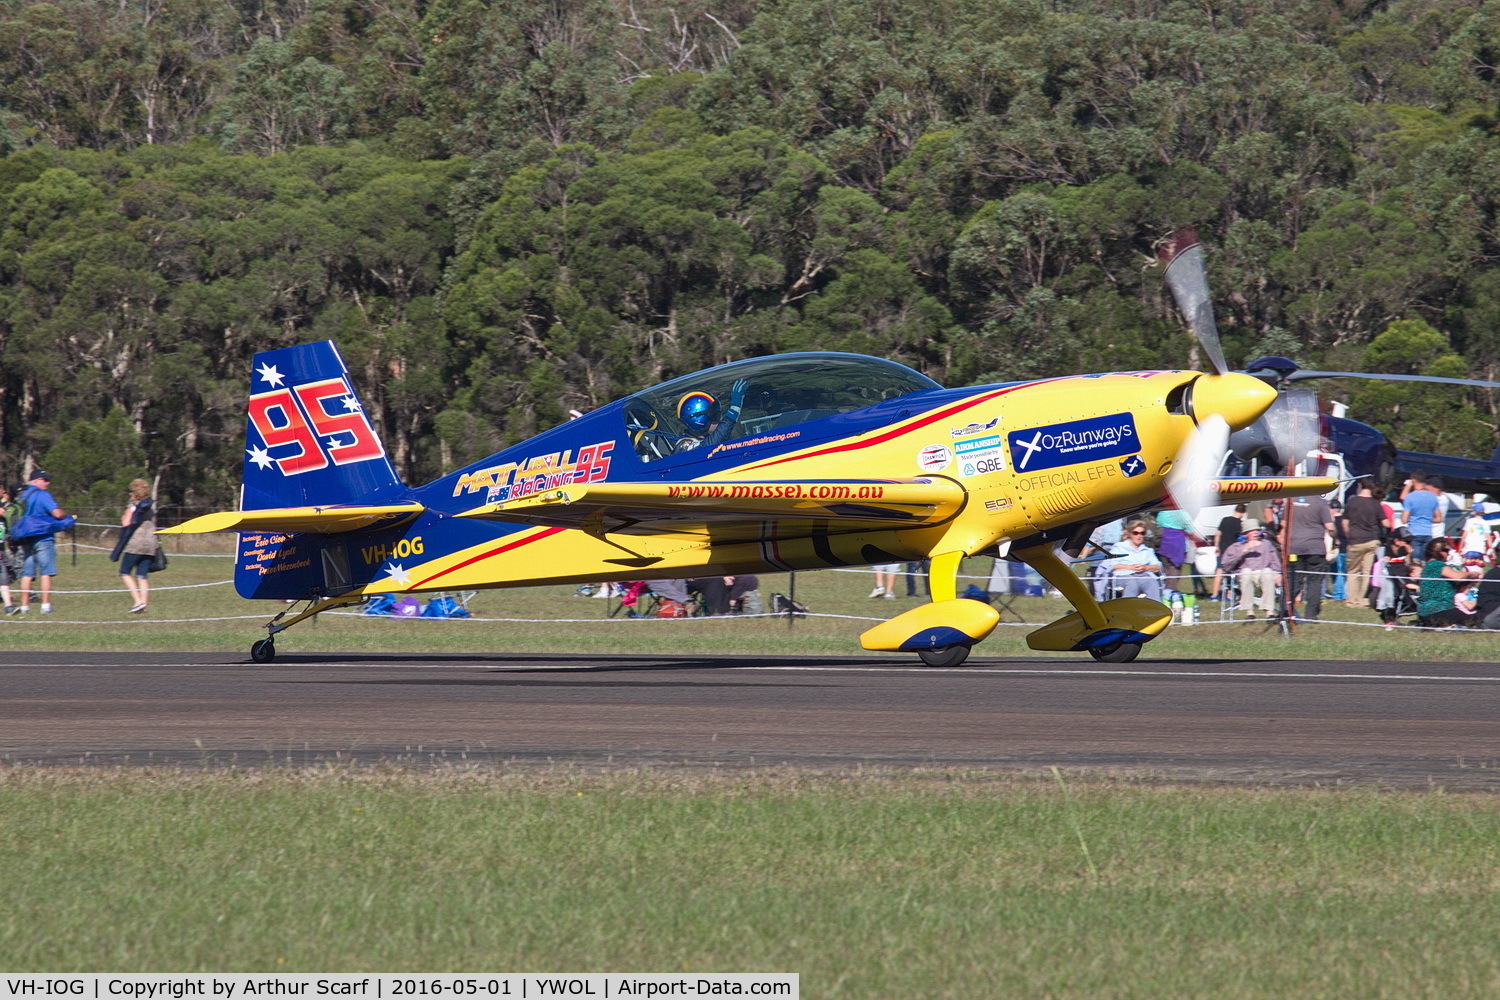 VH-IOG, 1999 Extra EA-300L C/N 100, VH-IOG Wings over Illawarra 2016